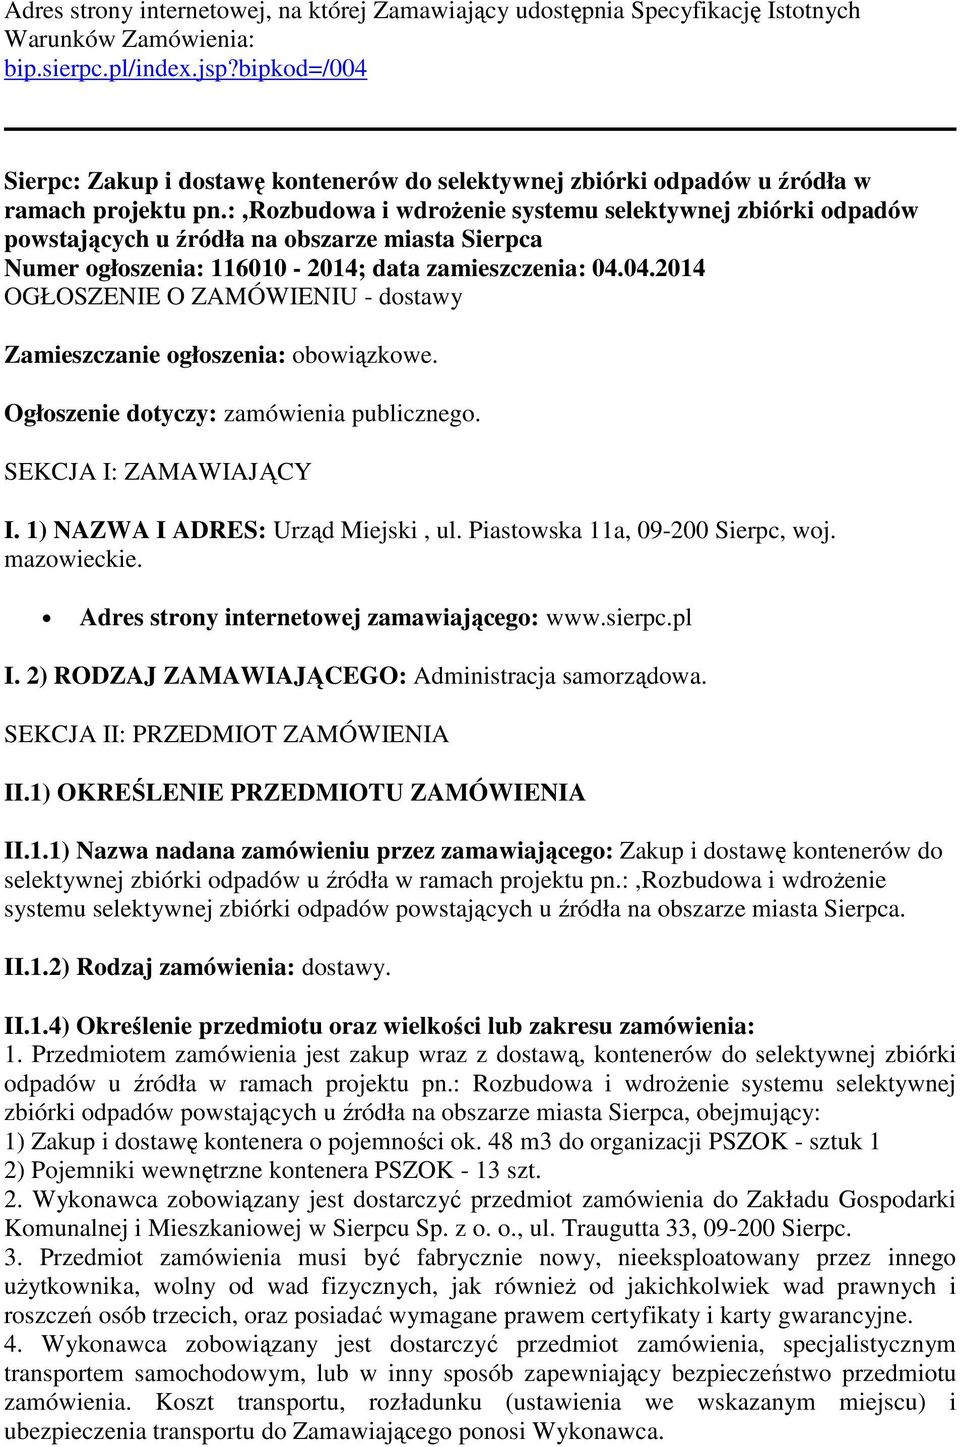 :,rozbudowa i wdrożenie systemu selektywnej zbiórki odpadów powstających u źródła na obszarze miasta Sierpca Numer ogłoszenia: 116010-2014; data zamieszczenia: 04.